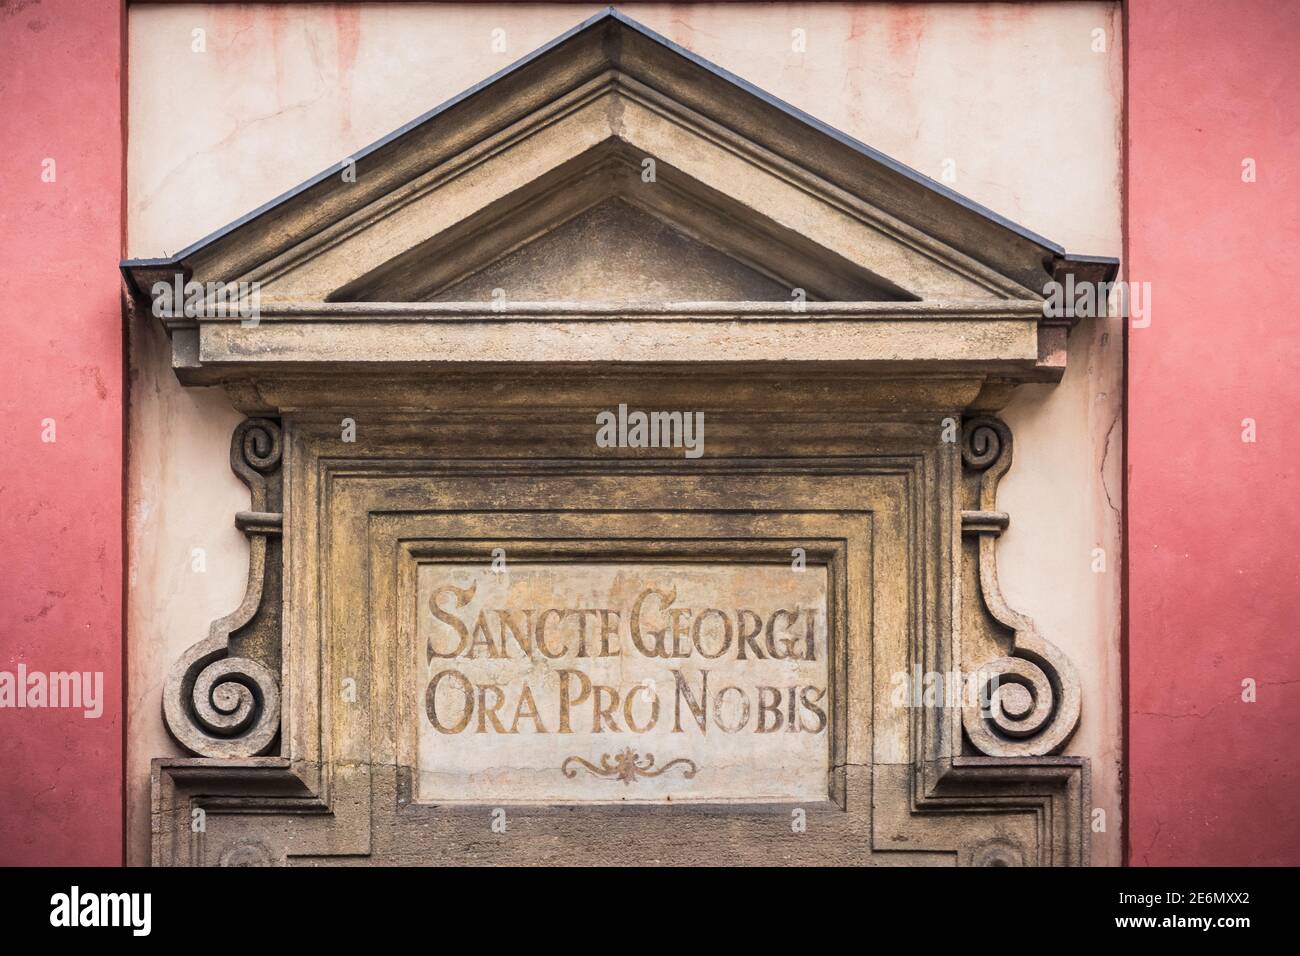 Inscription latine 'Santte Georgi ora Pro Nobis' - 'Saint George prie pour nous' au-dessus de l'entrée de la basilique Saint-Georges à Prague, République Tchèque Banque D'Images